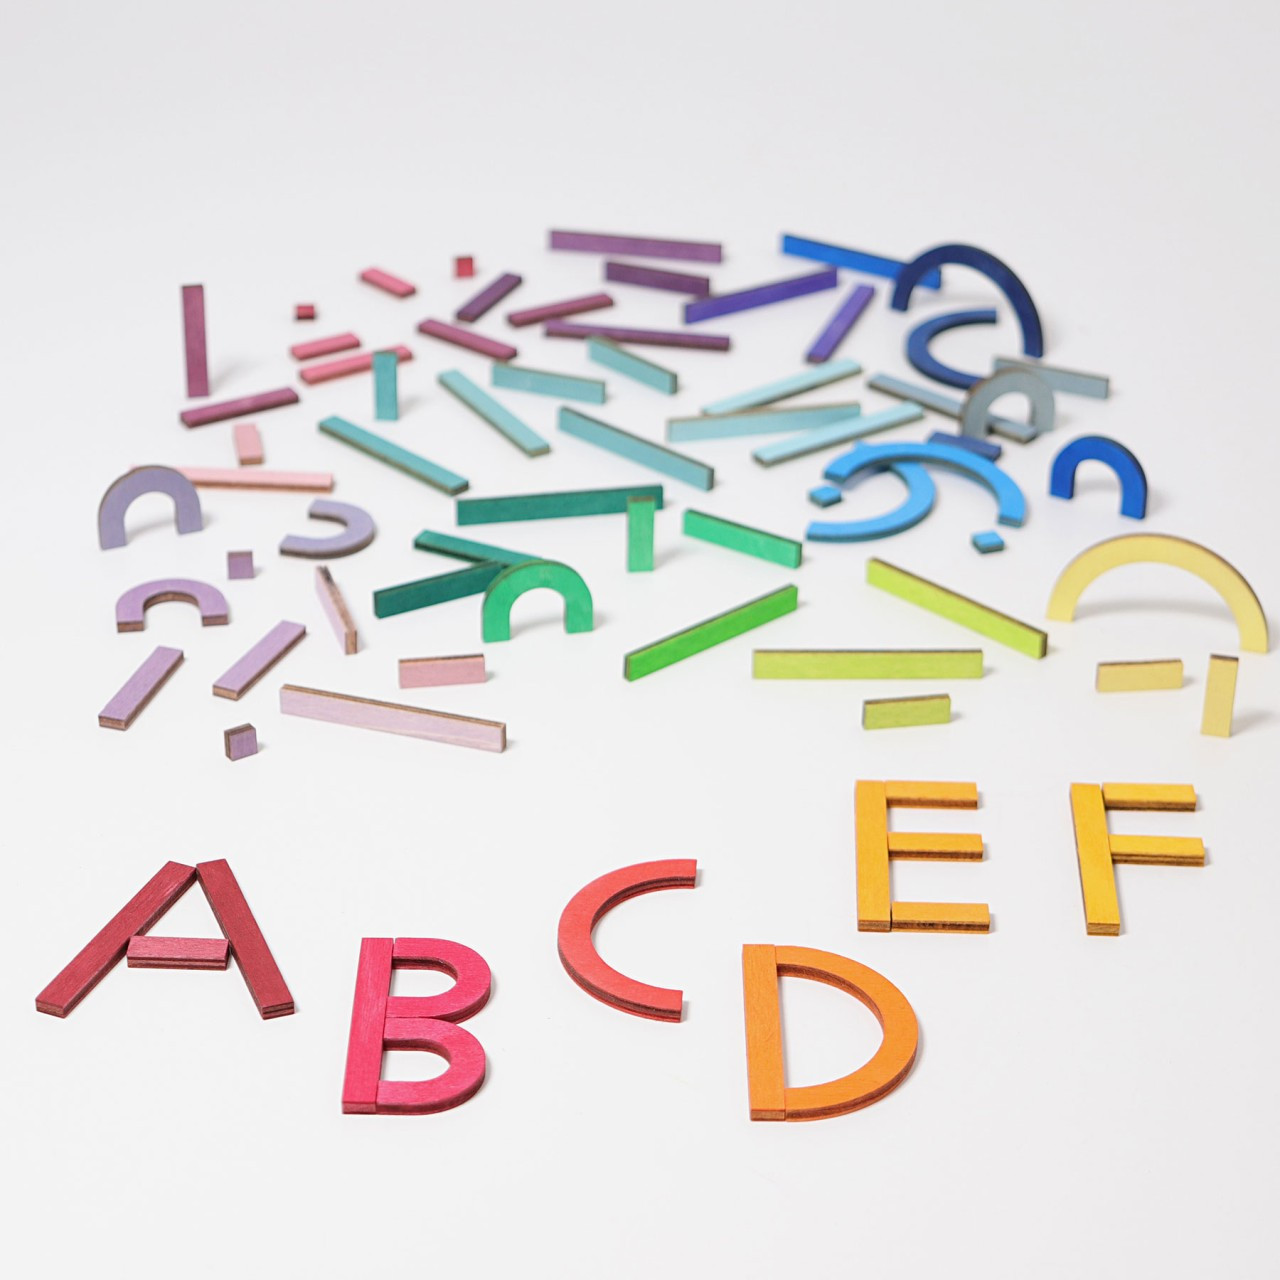 Lettere e numeri in legno grandi 5 cm-50 cm, colori diversi